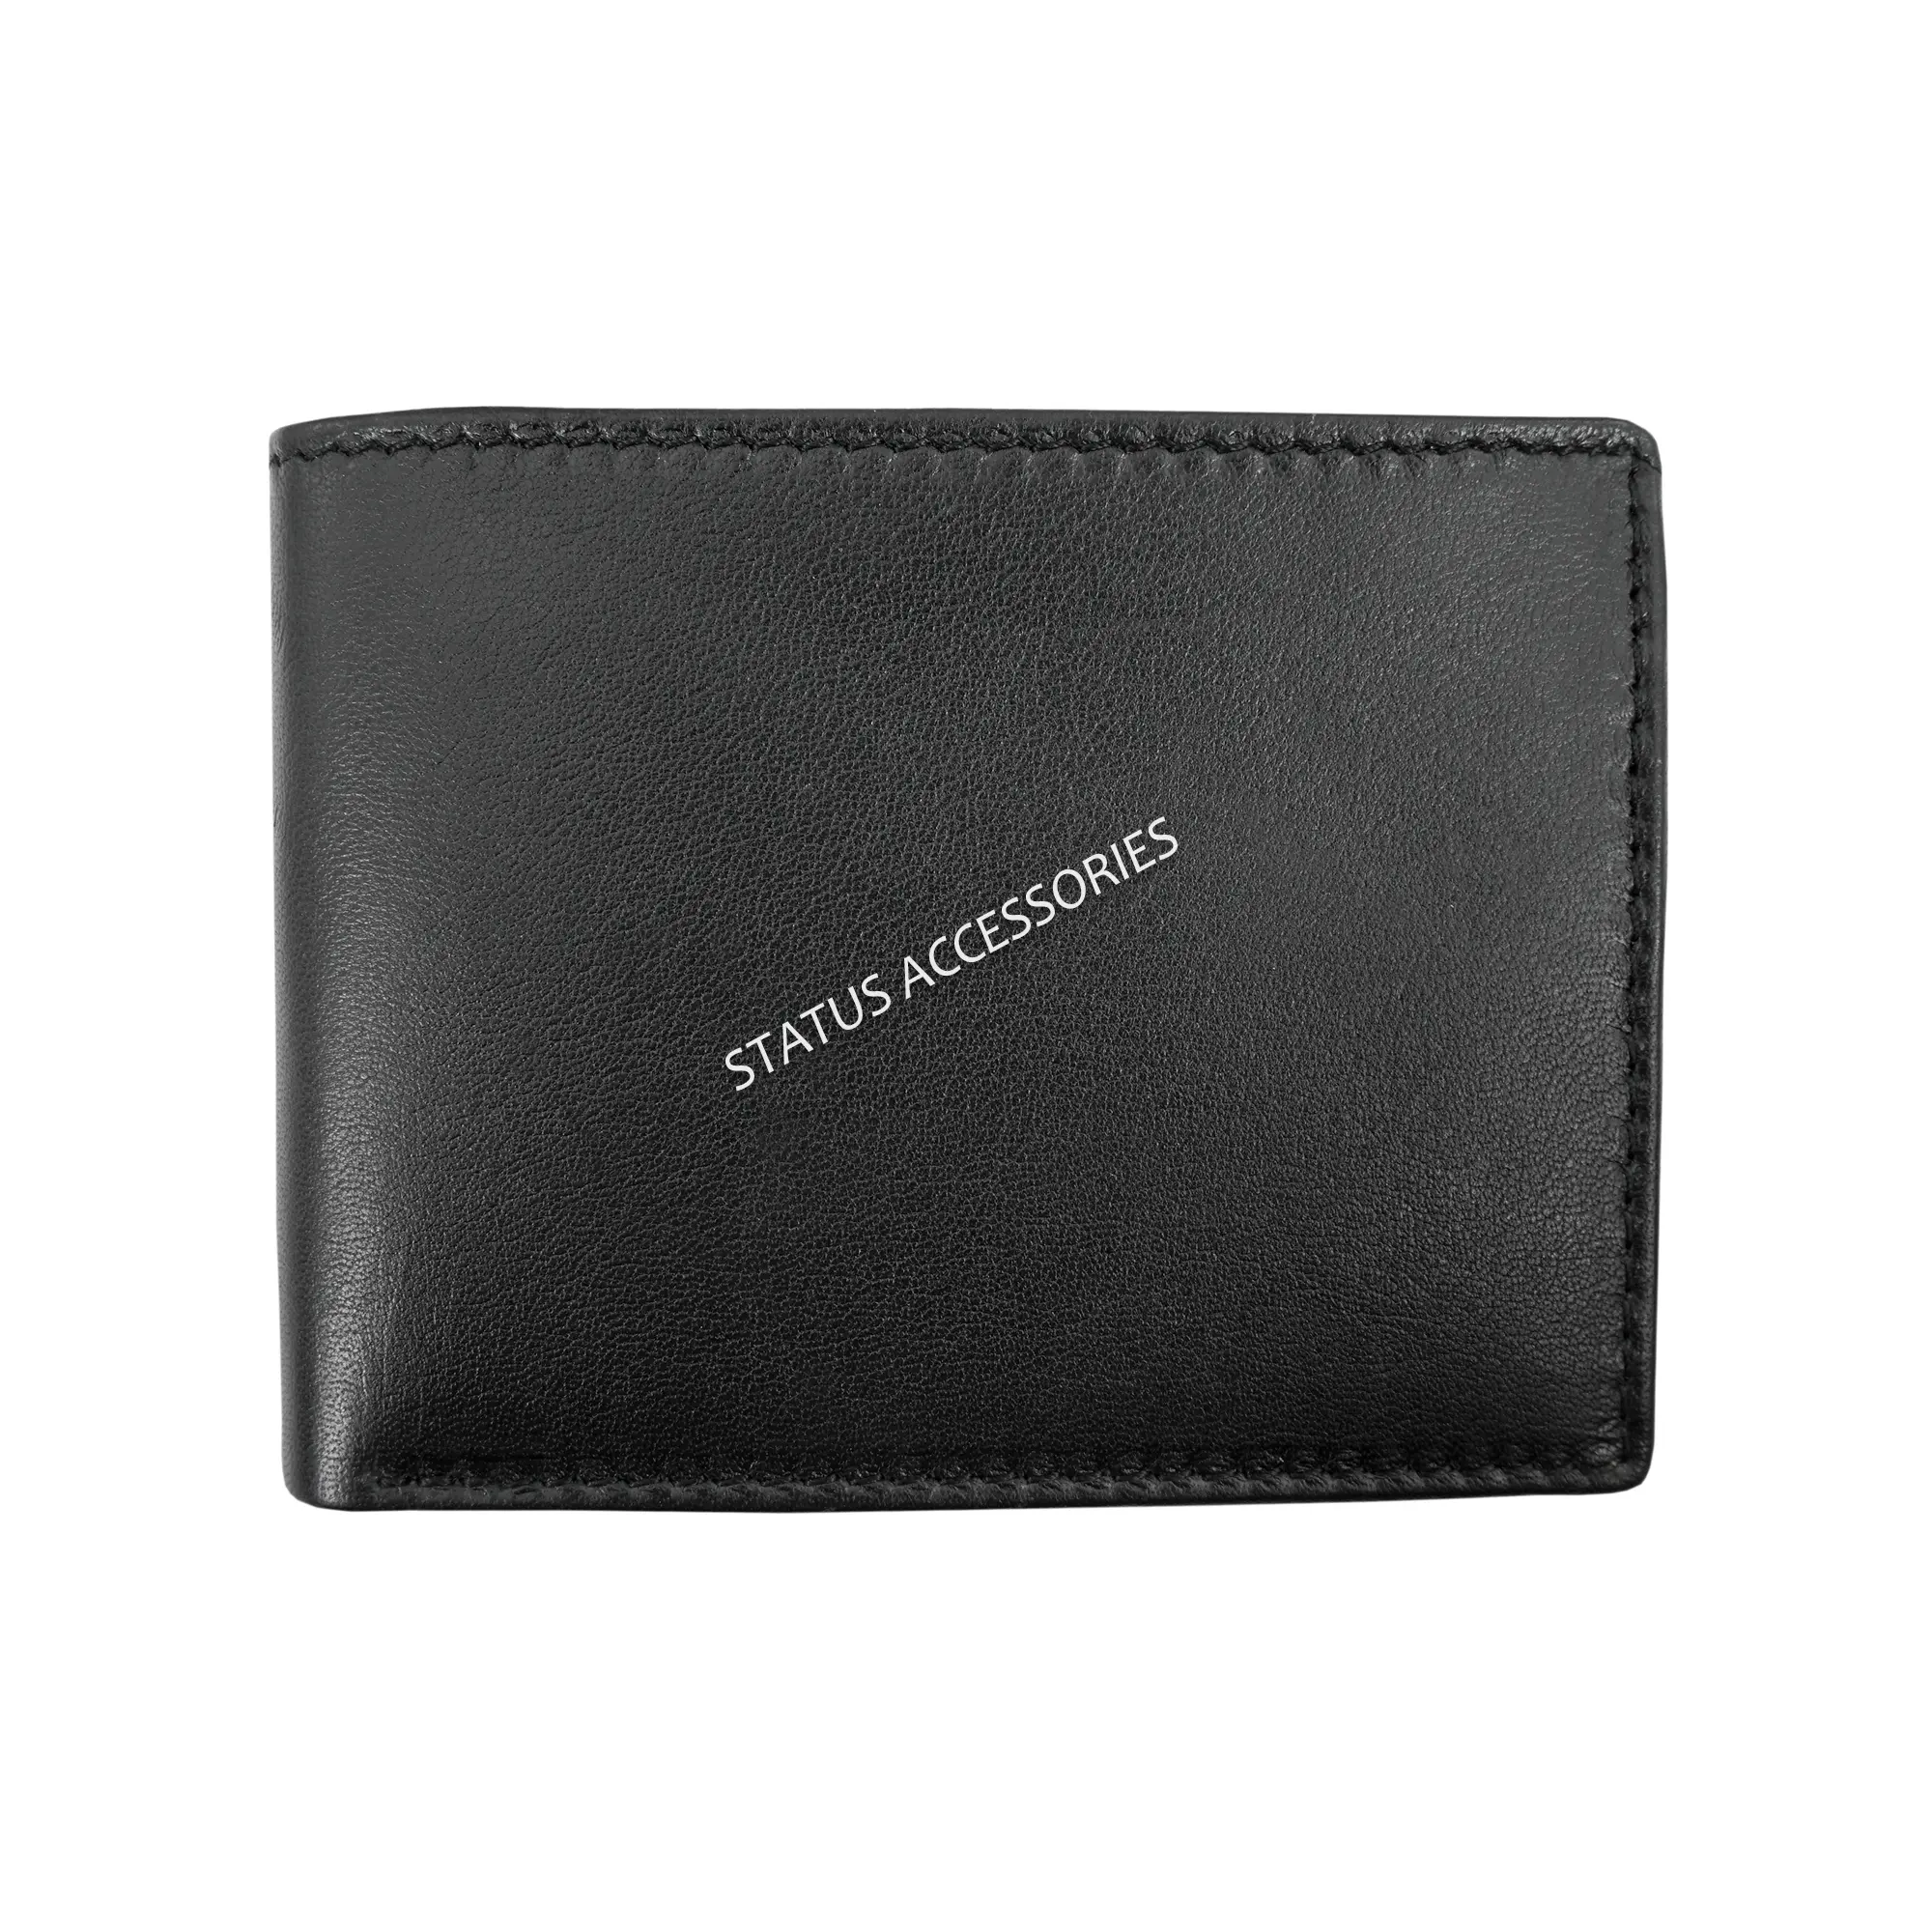 Personalizado personalizado en blanco fabricante venta 100% de alta calidad de cuero genuino estado para hombre piel de cordero RFID Passcase Wallet